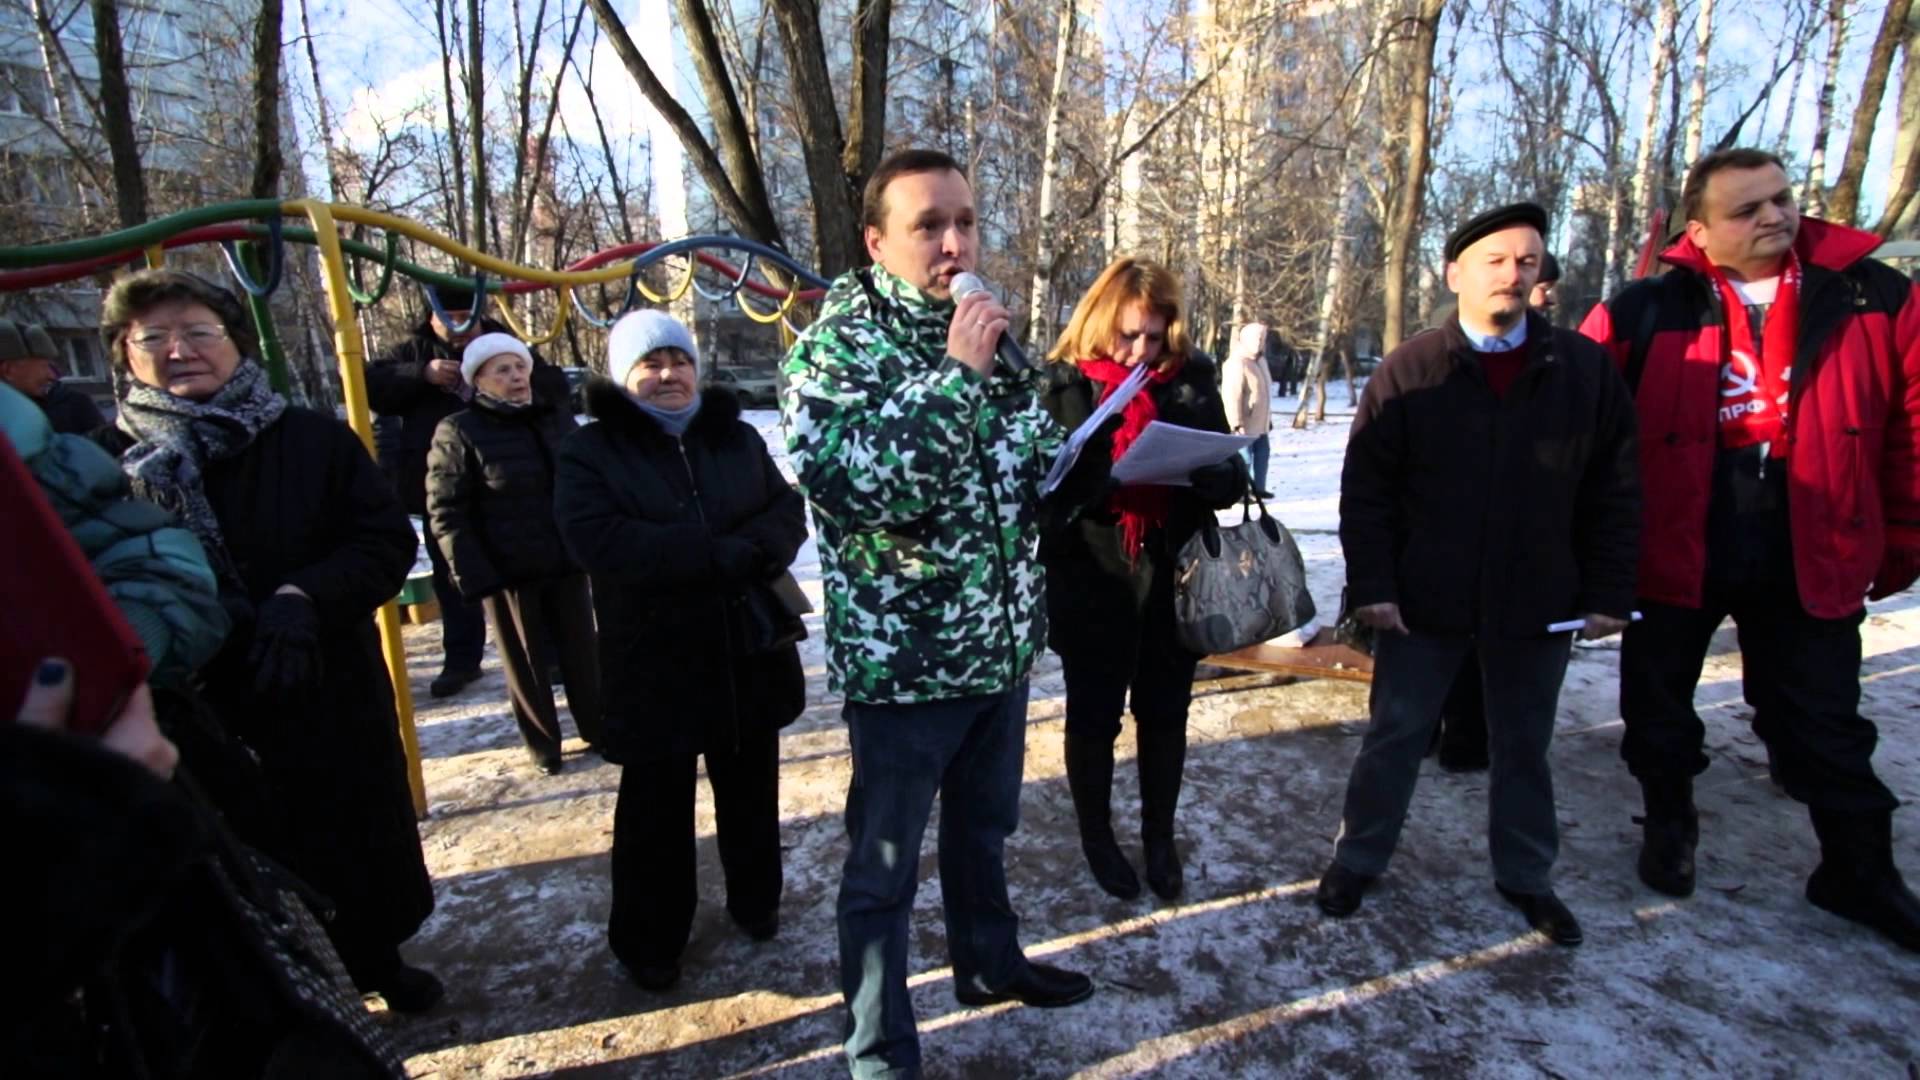 Митинг в районе Очаково-Матвеевское 29.11.2015 ч.14